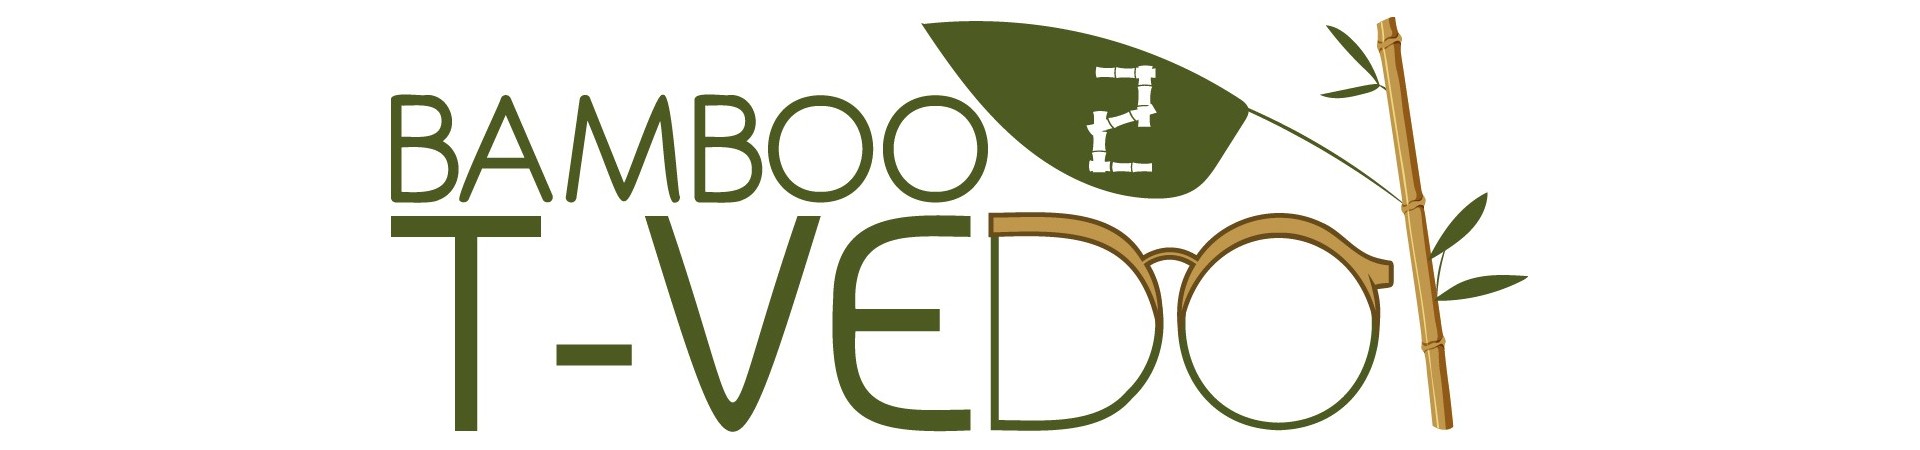 T-Vedo Bamboo²